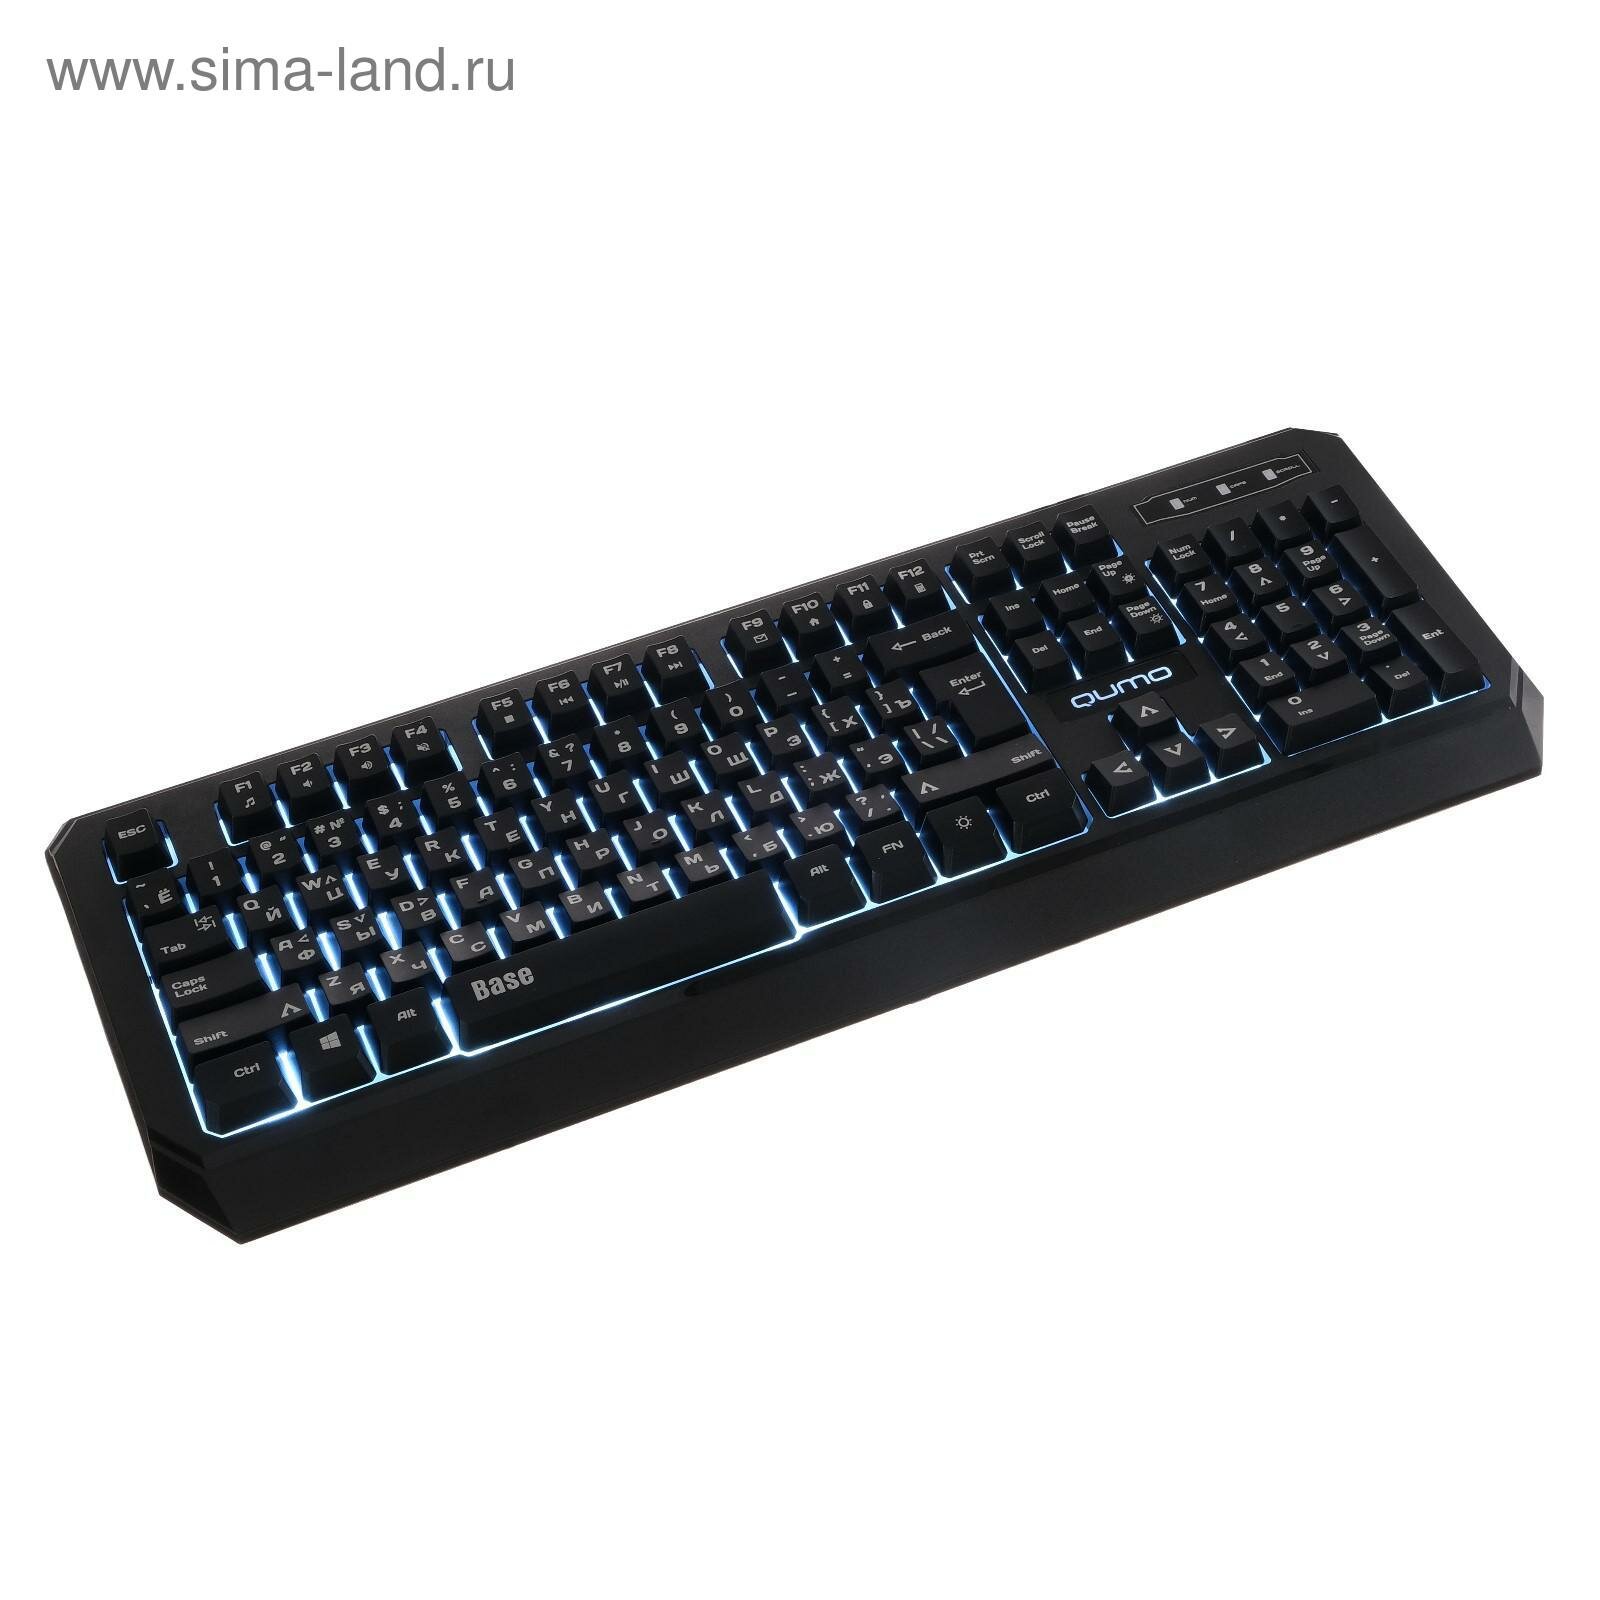 Клавиатура Base K59, проводная, мембранная, 104 клавиши, USB, подсветка, чёрная